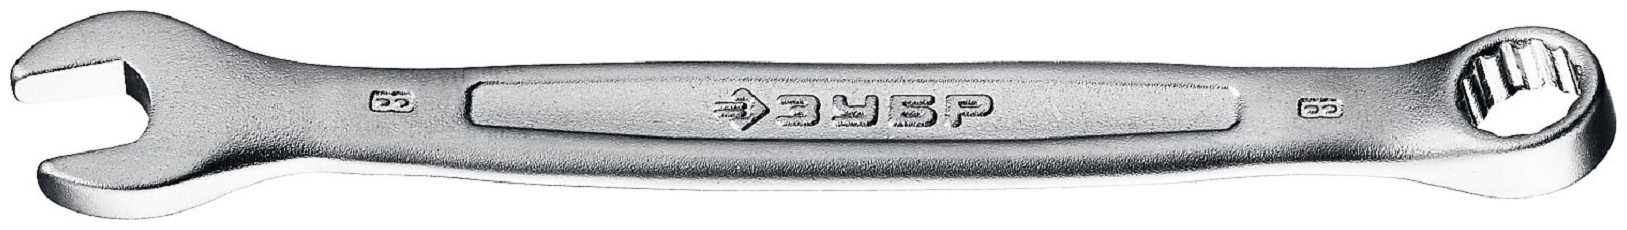 Комбинированный гаечный ключ ЗУБР мастер 8мм 27087-08 z01